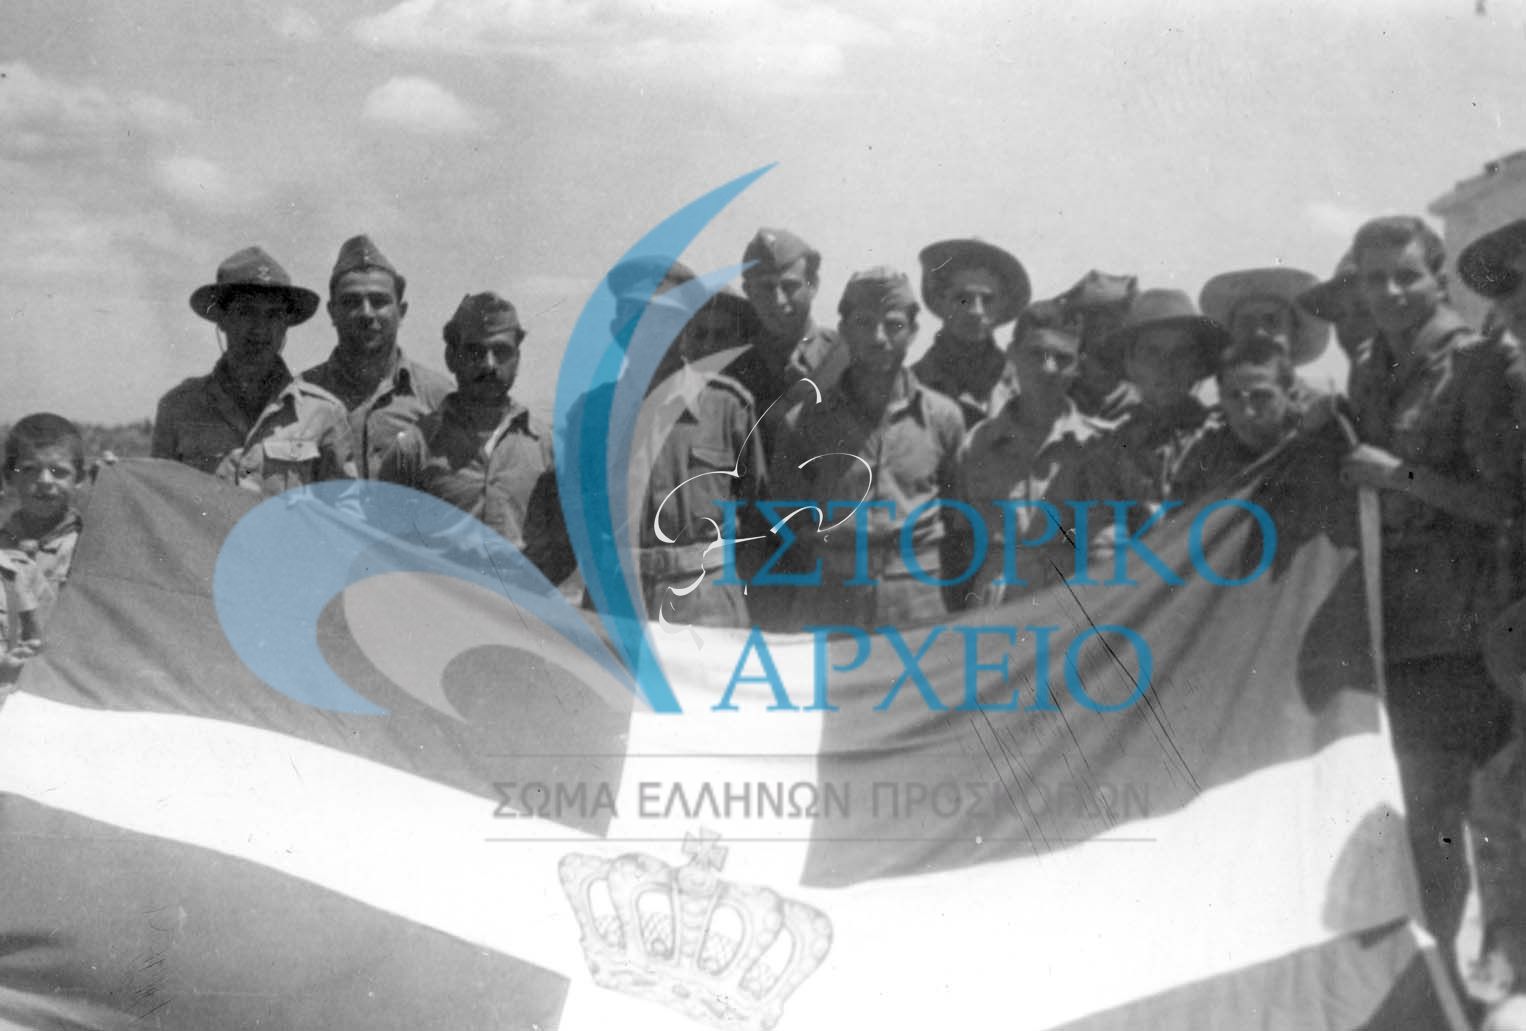 Κατά την διάρκεια επίσκεψης στο μεθοριακό φυλάκιο της Νίκης την περίοδο του εμφυλίου, πρόσκοποι δωρίζουν ελληνική σημαία στο διμοιρίτη της στρατιωτικής δύναμης.